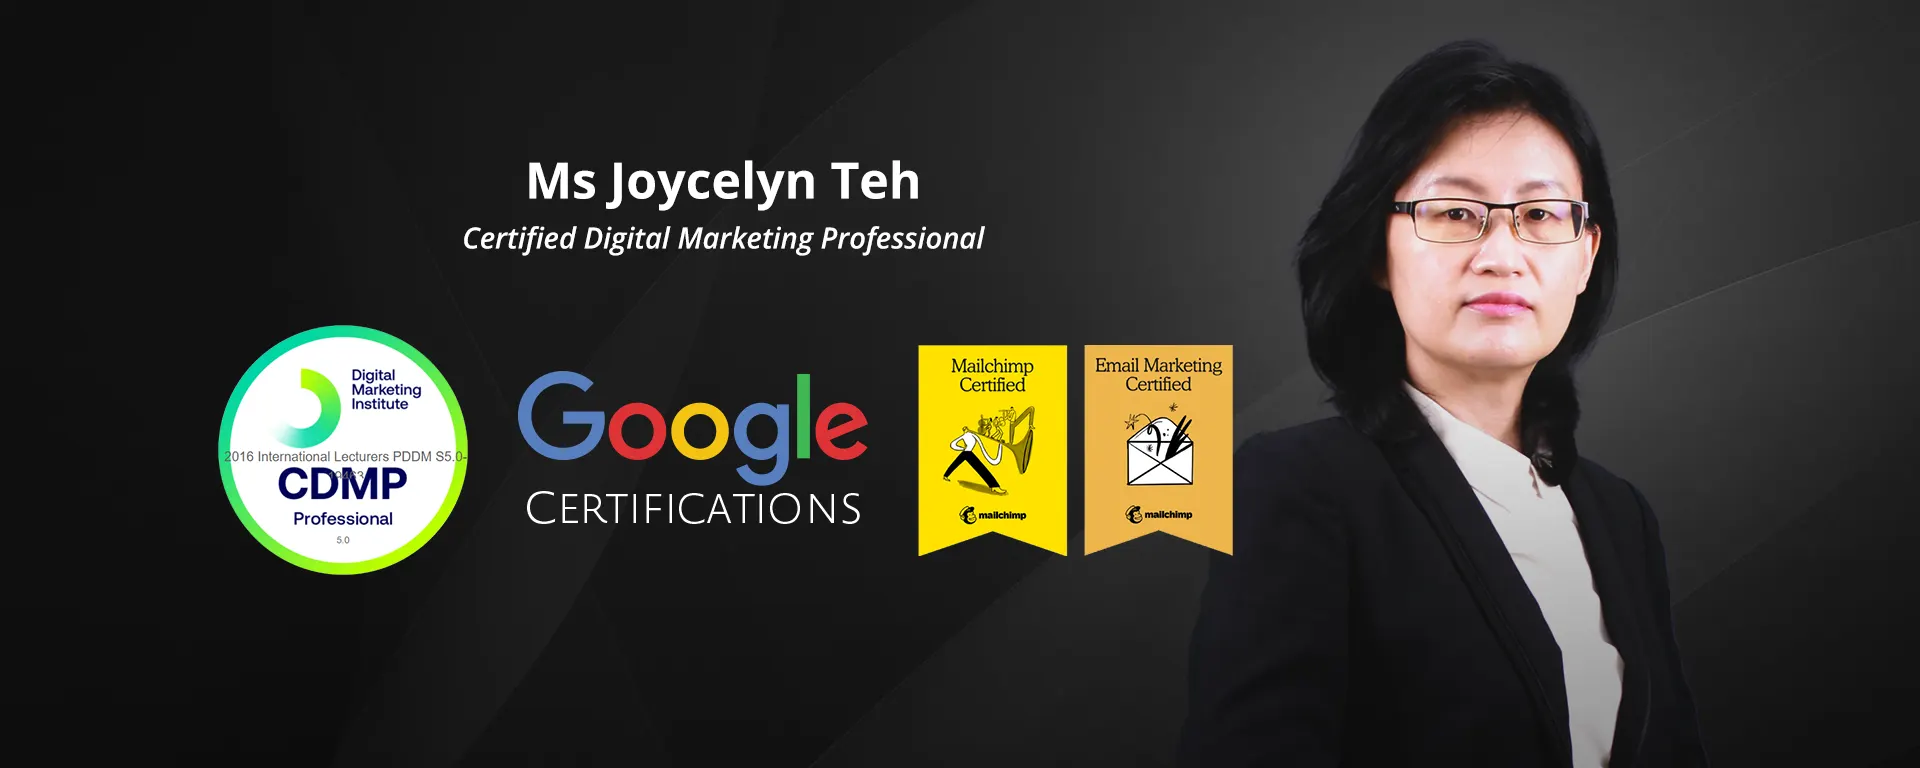 Joycelyn Teh - Certified Digital Marketing Professional